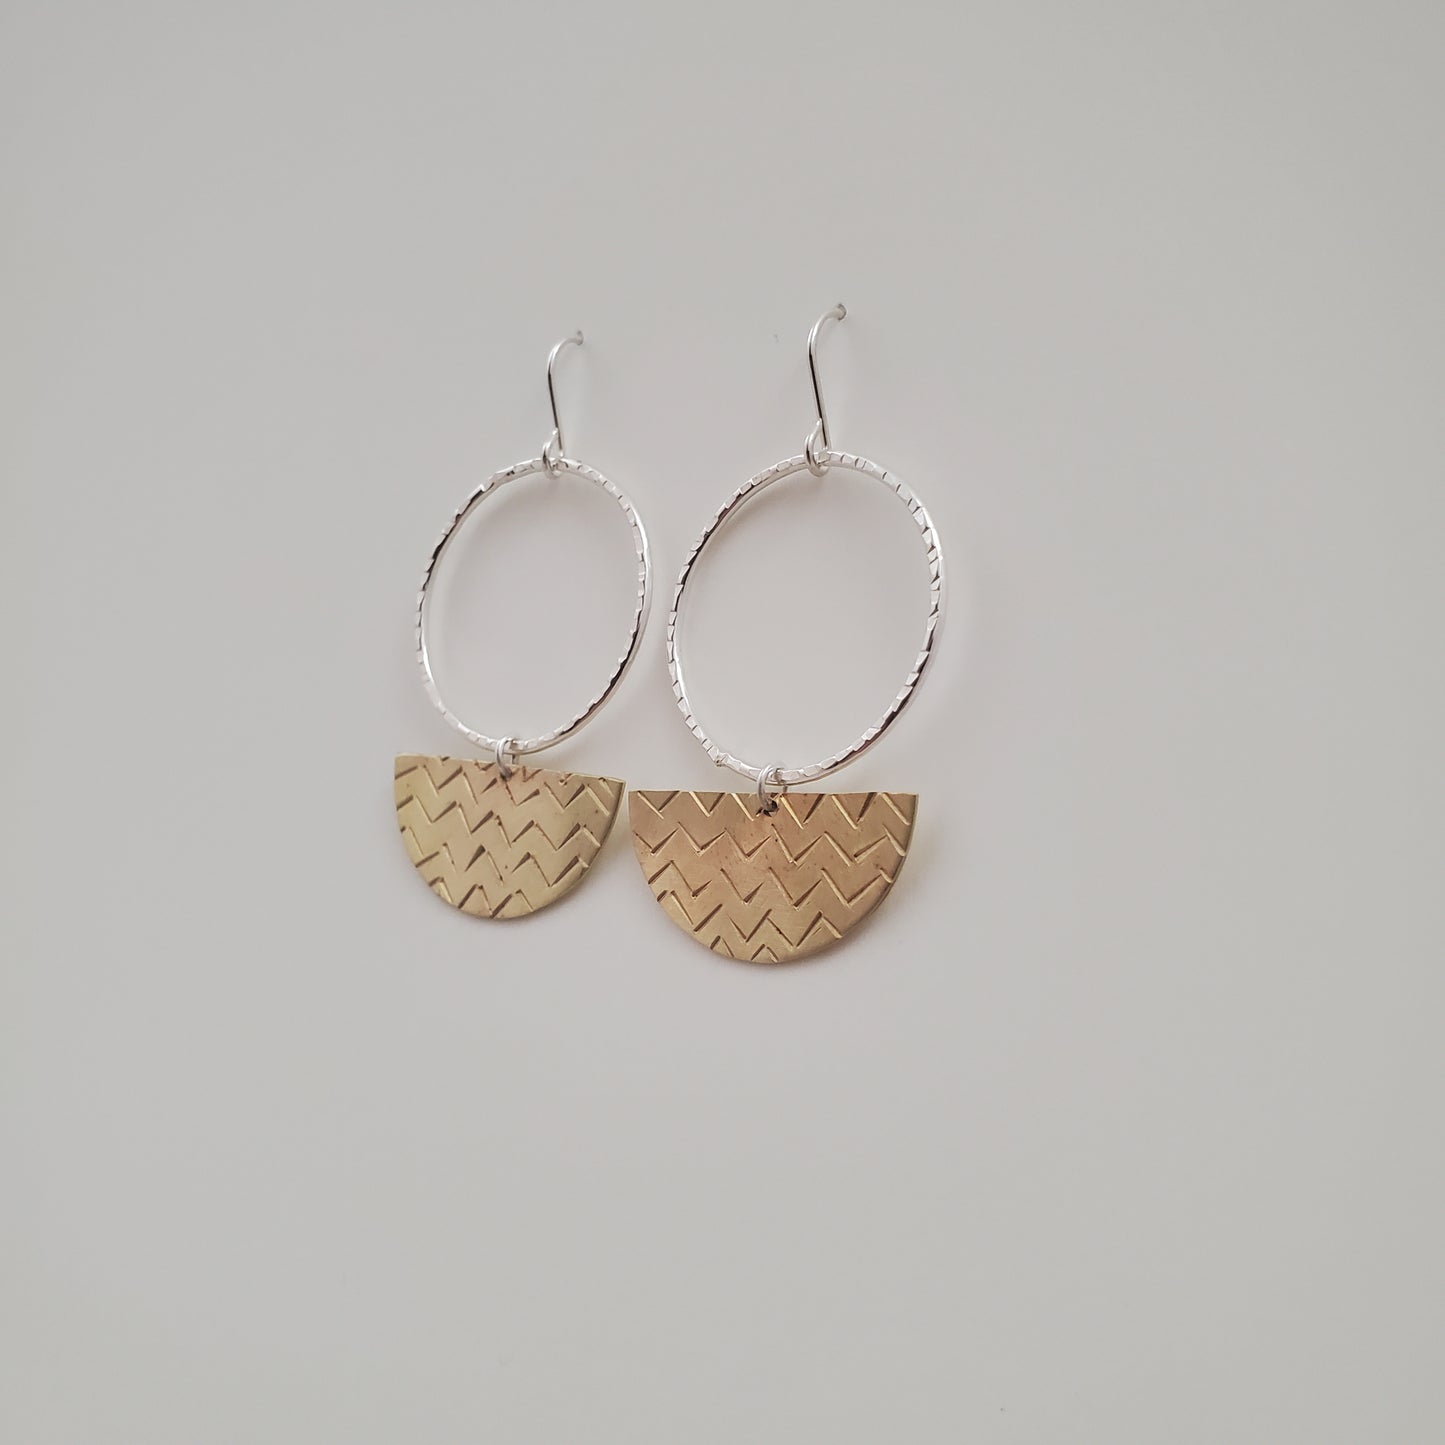 “LeMatin” Earrings by Melissa Morrison Jewellery